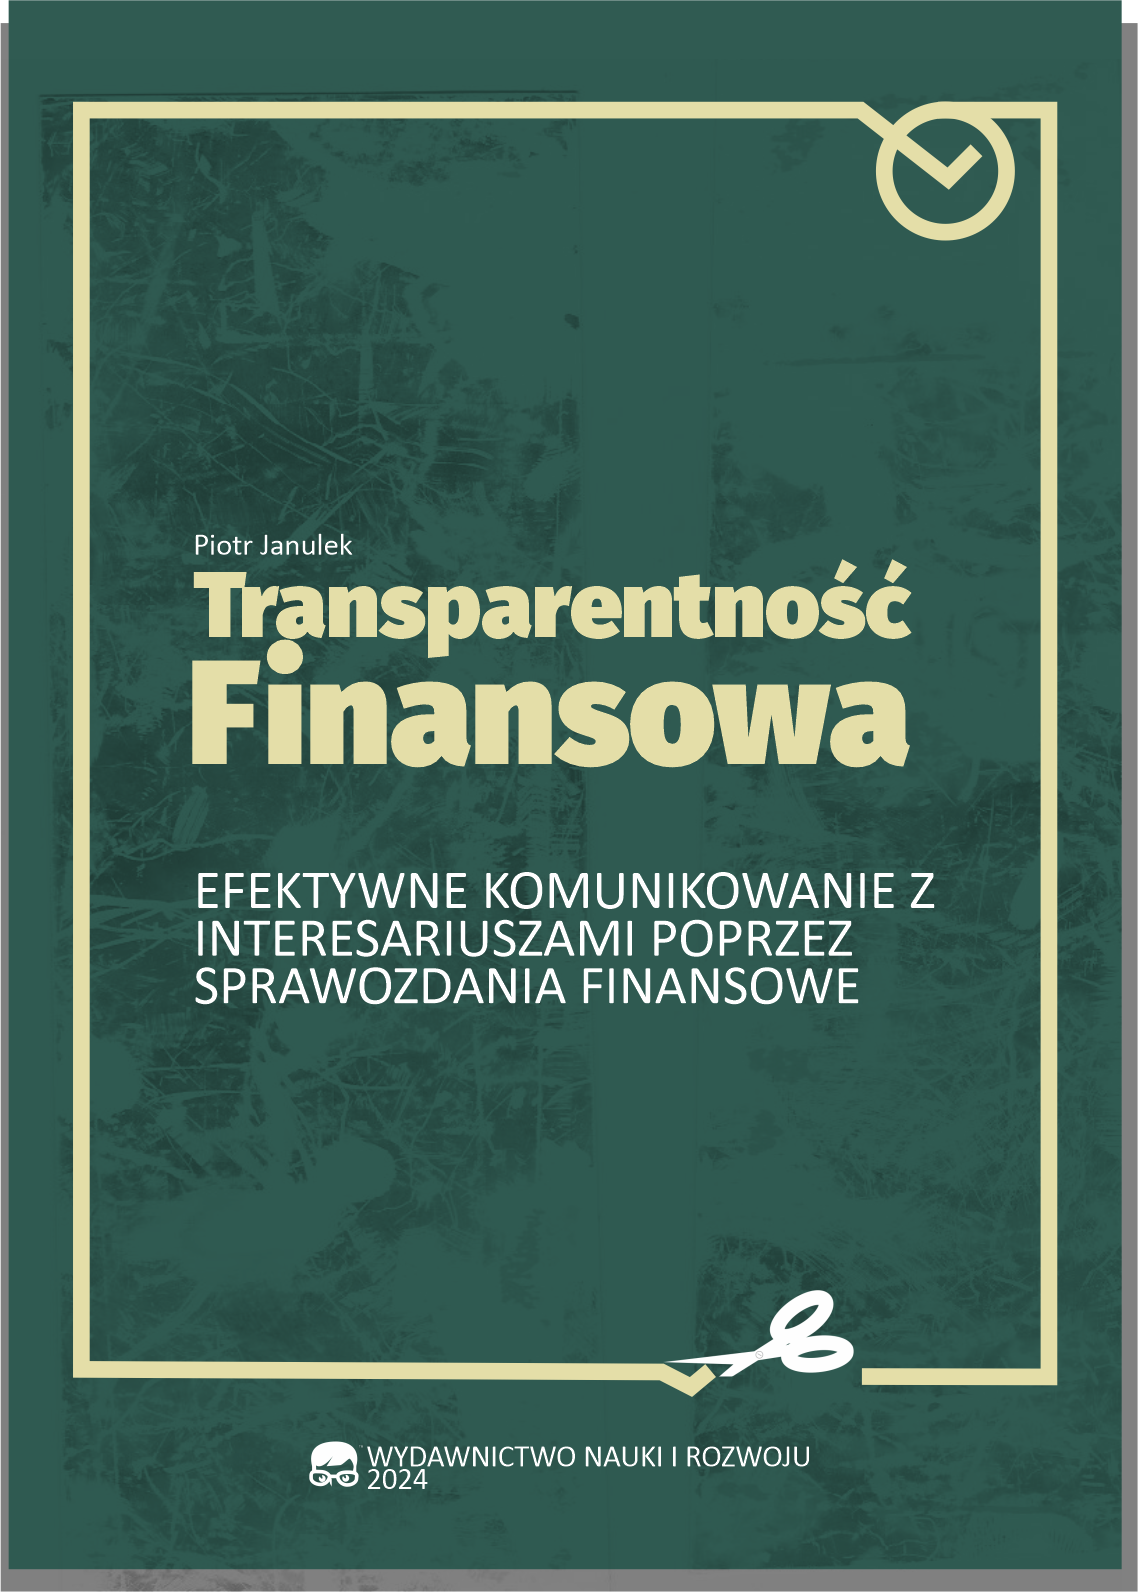 Transparentność Finansowa: Efektywne Komunikowanie z Interesariuszami poprzez Sprawozdania Finansowe